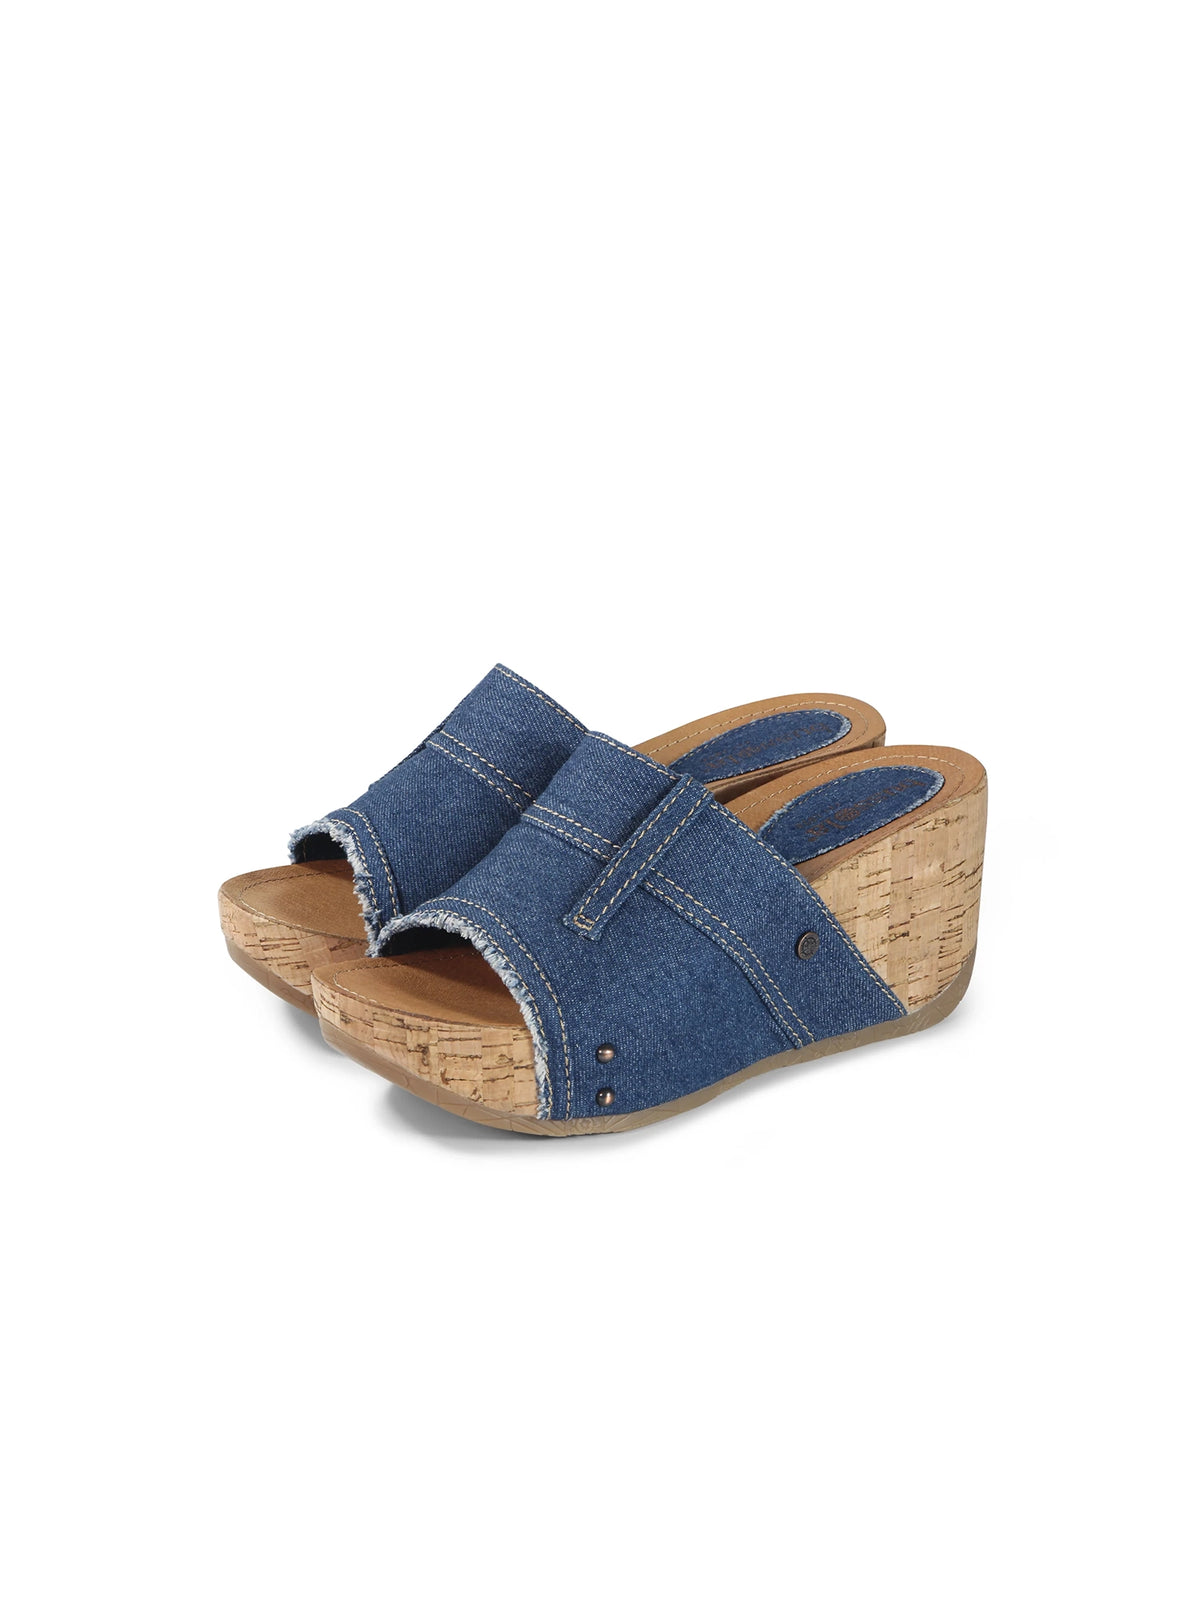 bussola formentera felicia platform wedge slide sandals in blue denim